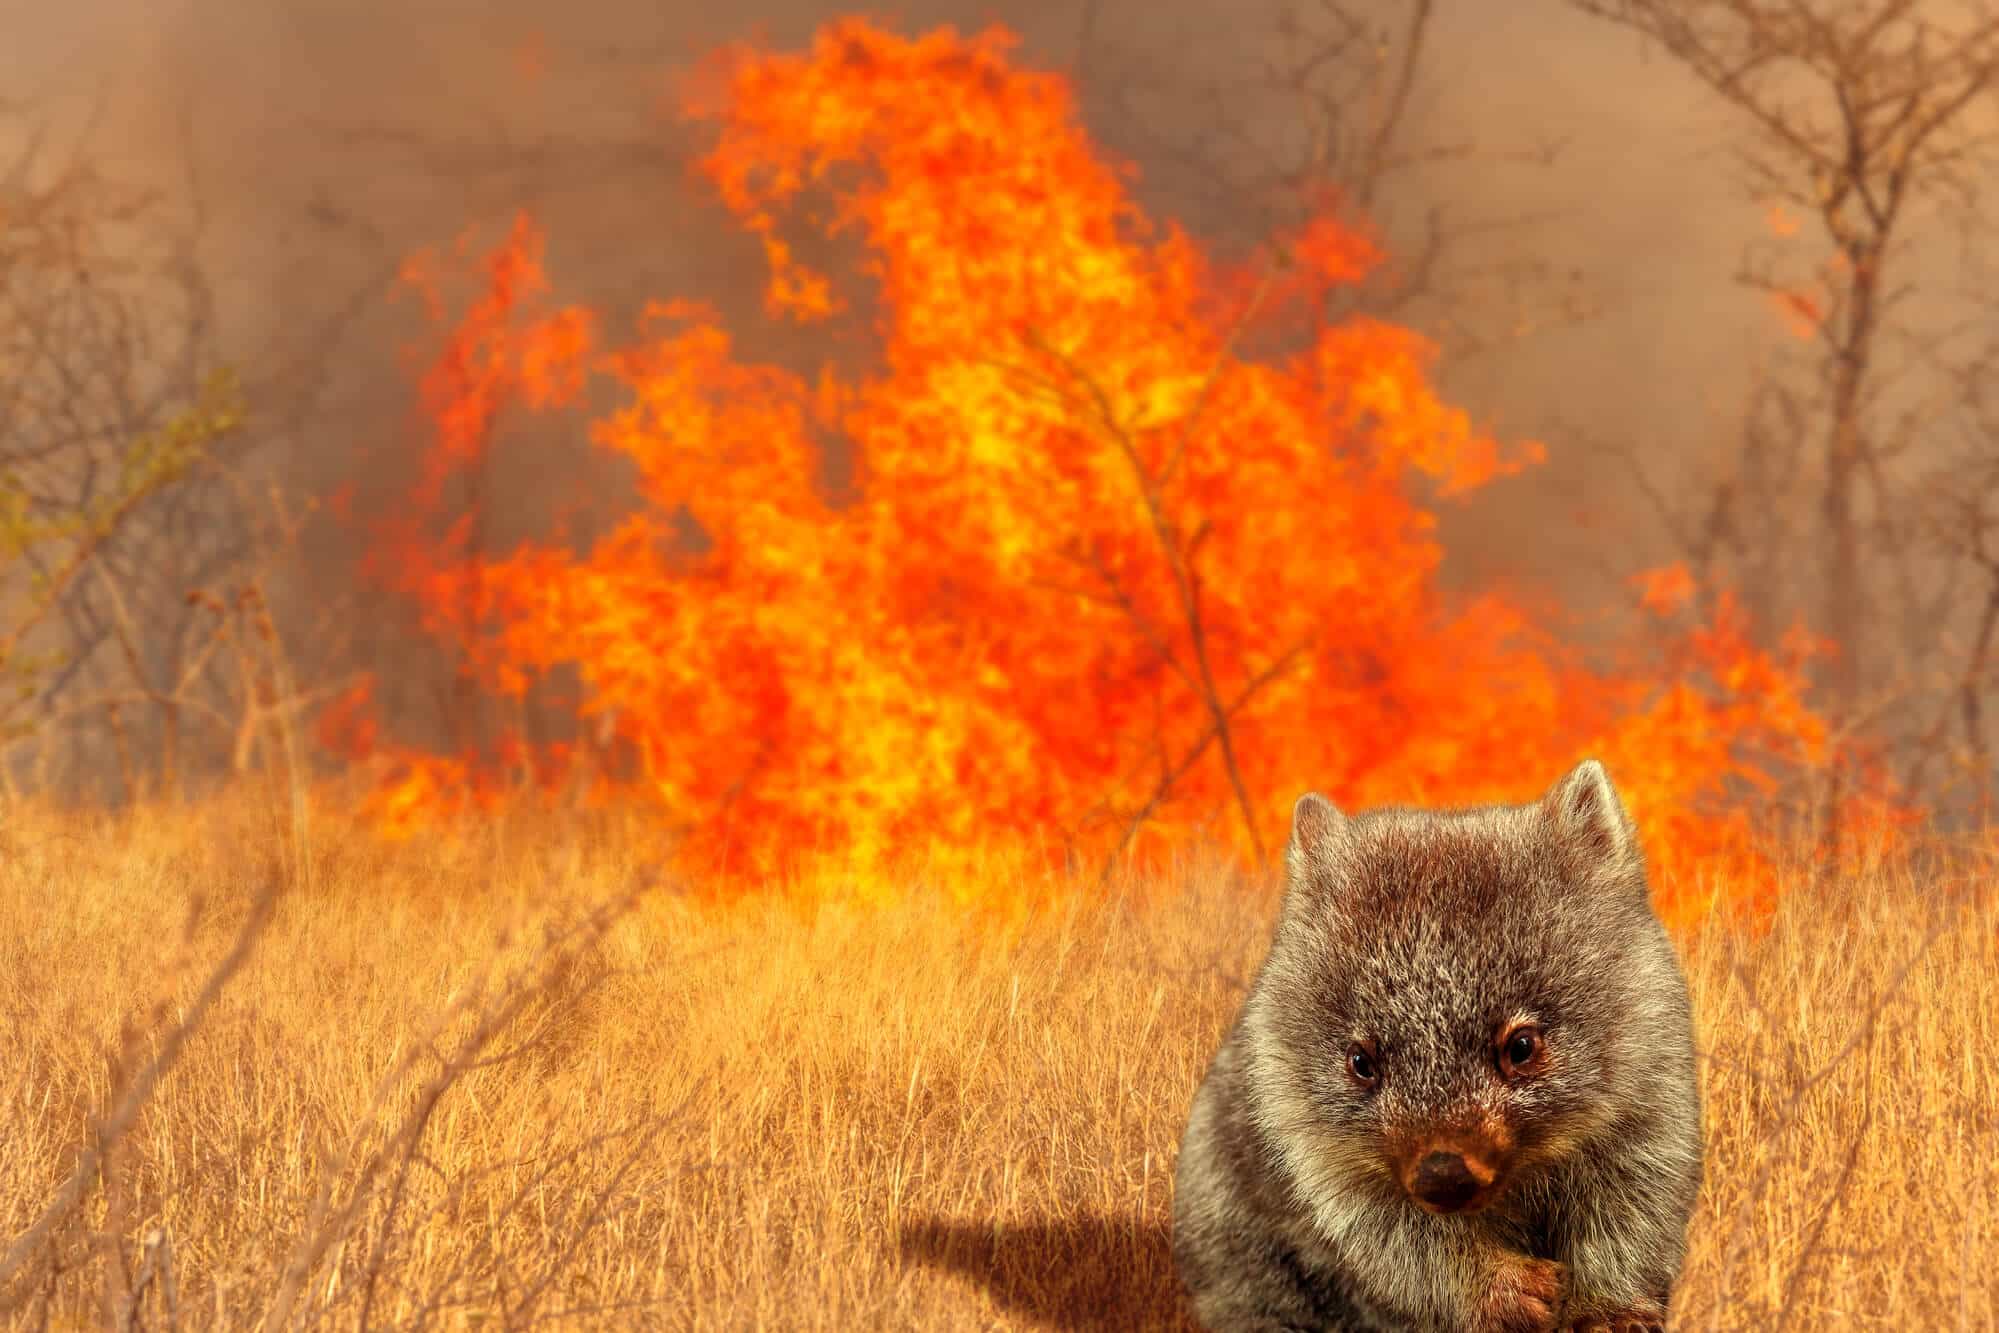 حيوان الومبت ينجو من حرائق الغابات في أستراليا. الرسم التوضيحي: موقع Depositphotos.com